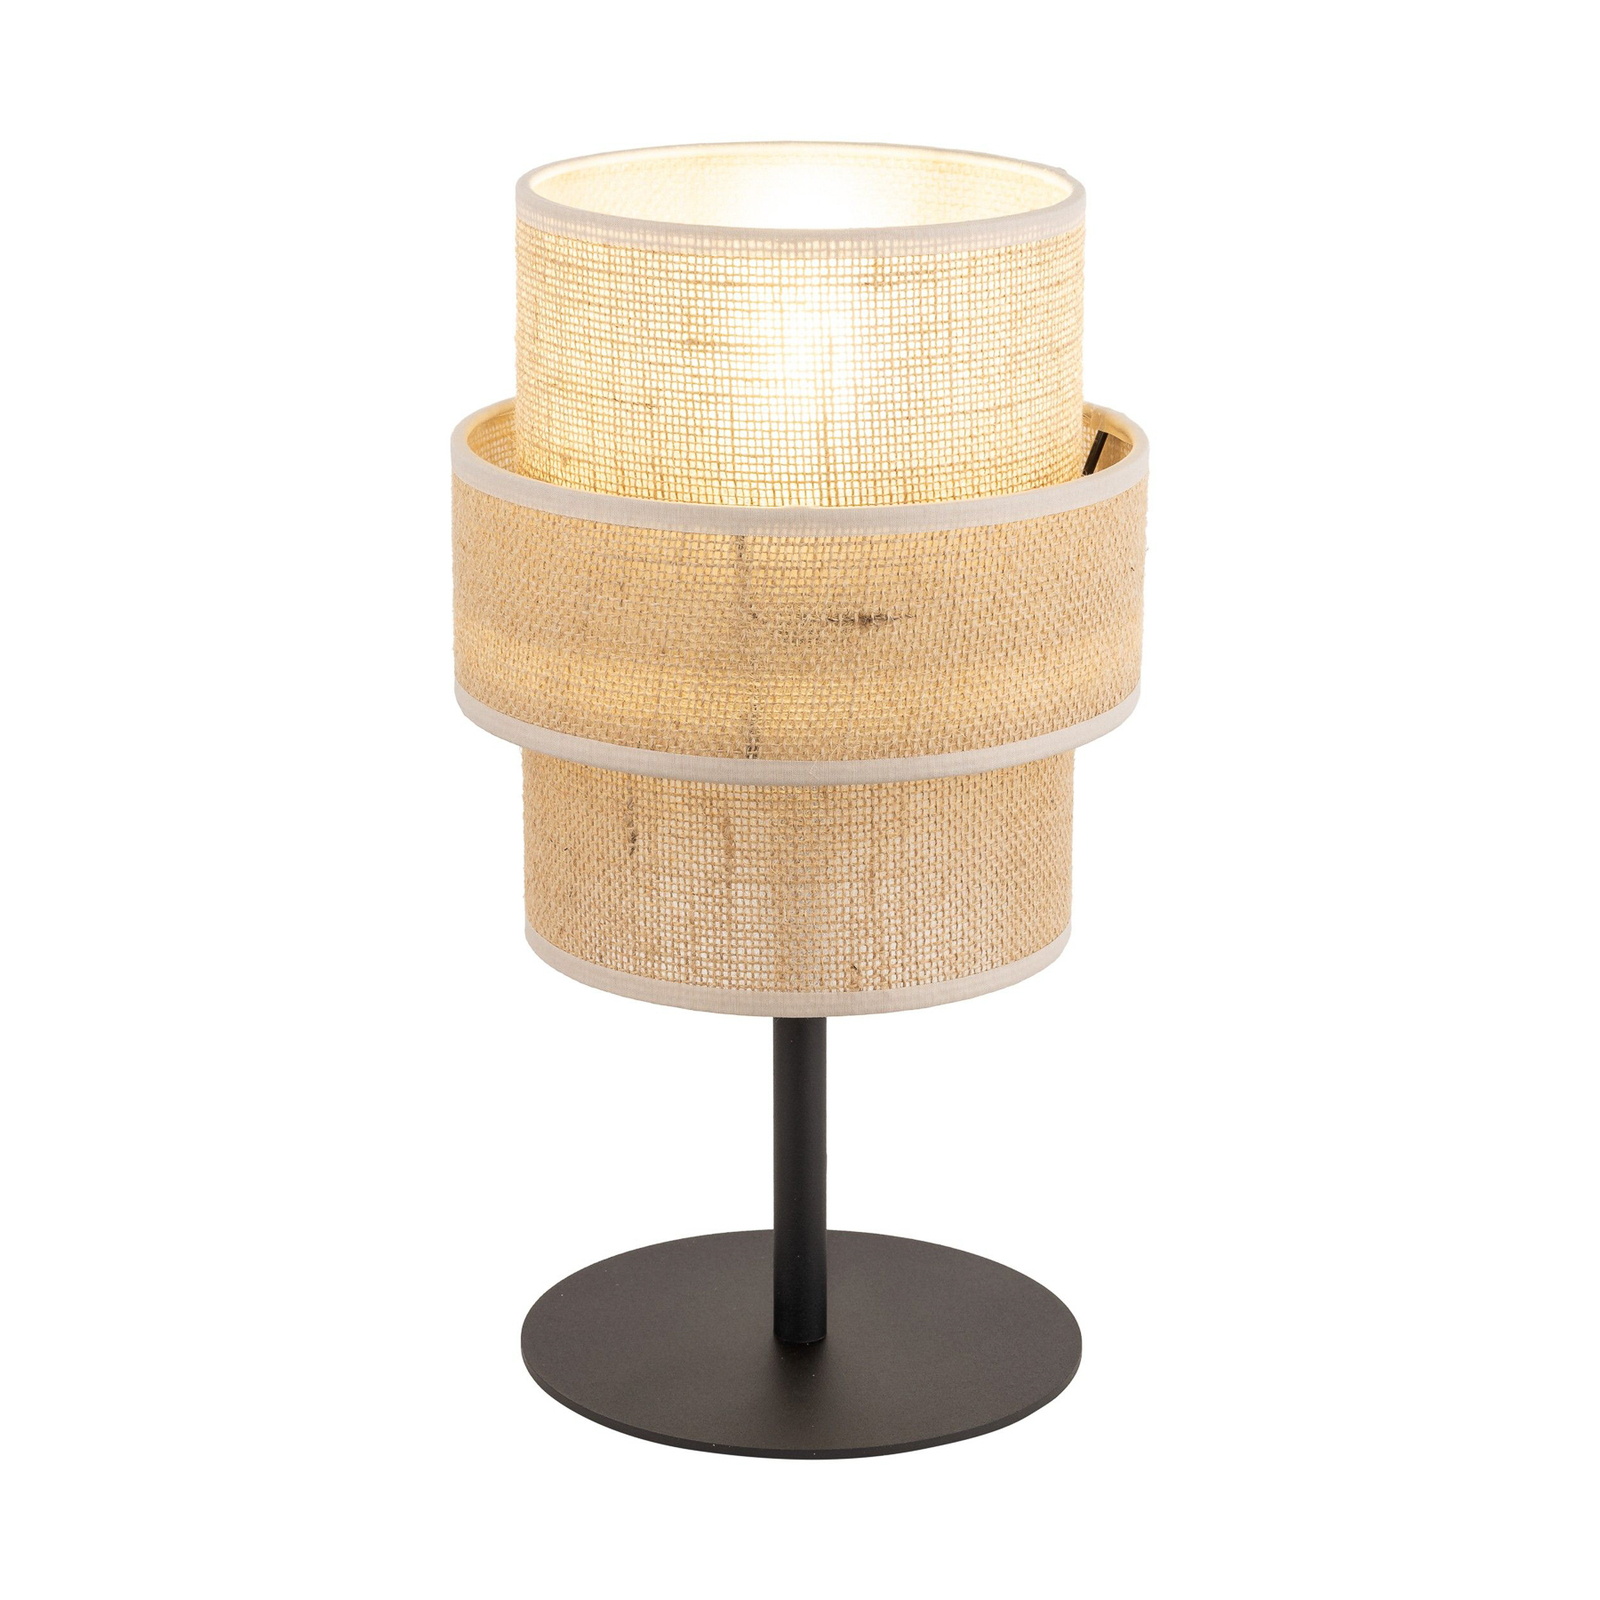 Calisto bordslampa, jute, naturbrun, höjd 38 cm